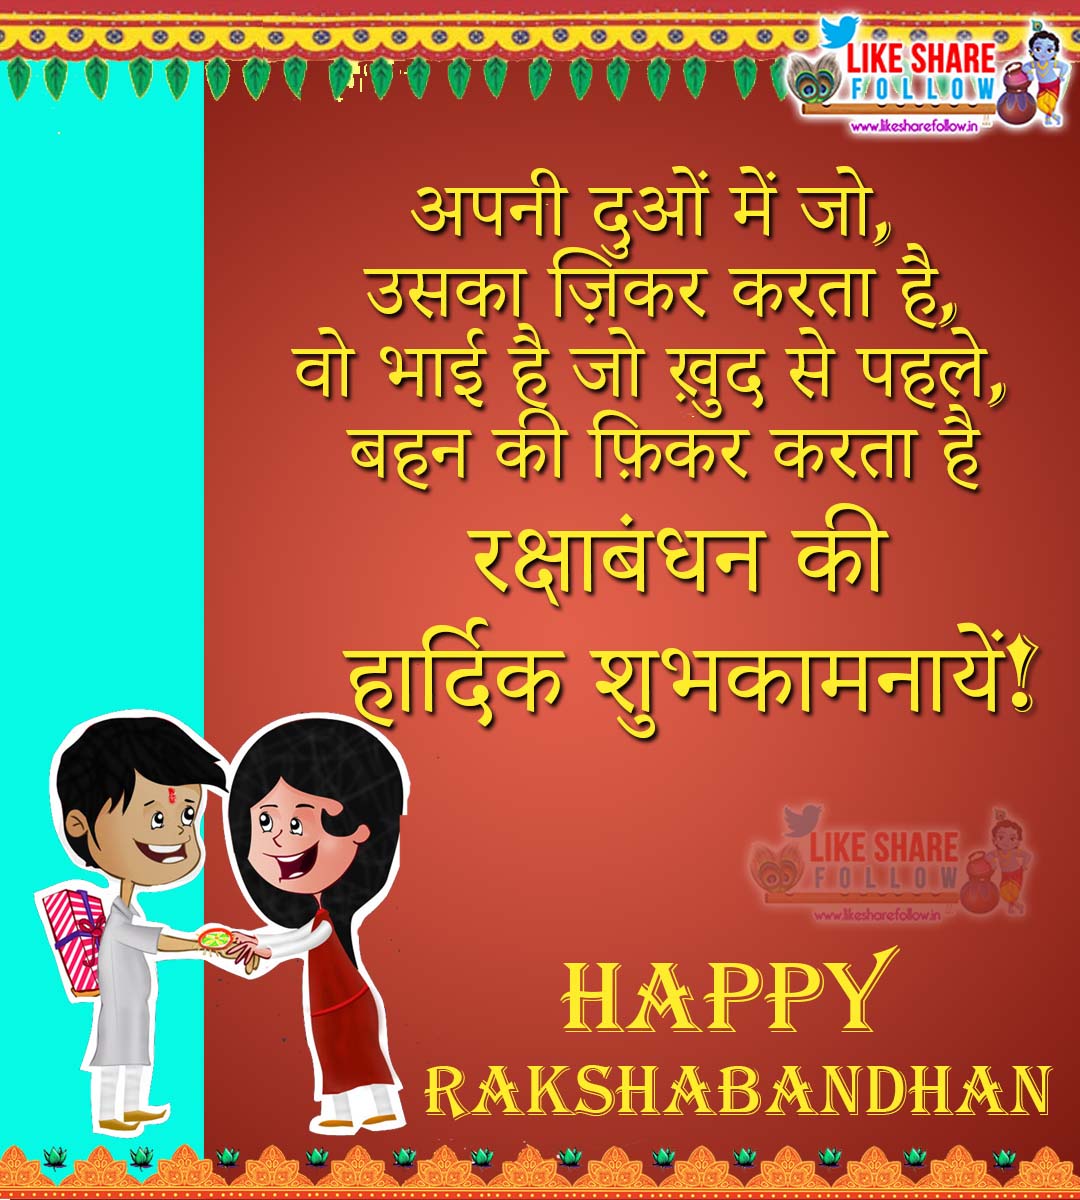 happy raksha bandhan shayari images quotes in hindi language | QUOTES